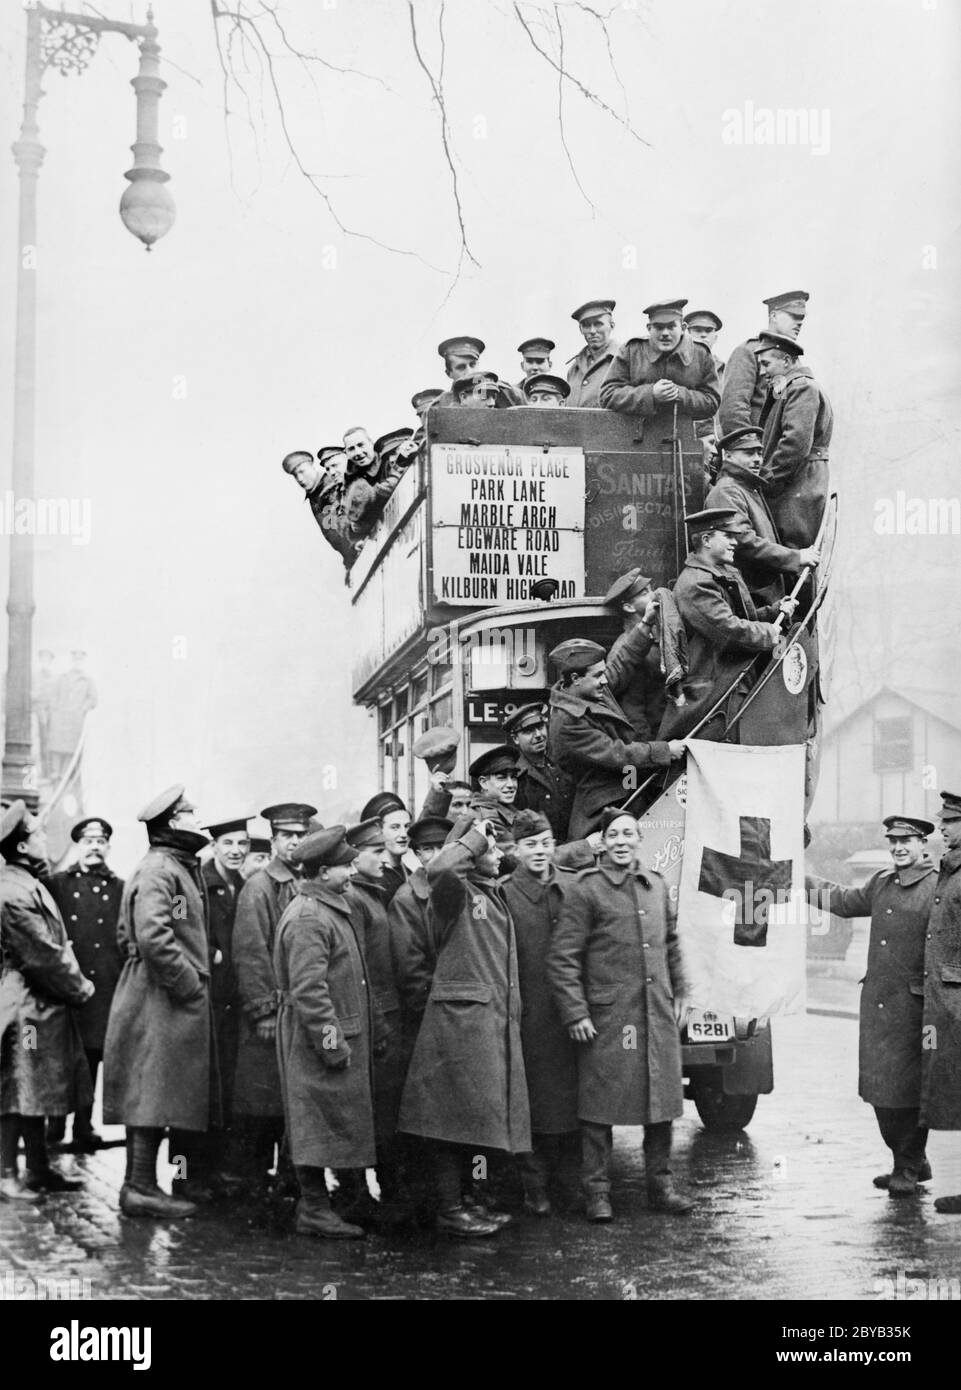 Große Gruppe amerikanischer Soldaten auf dem Weg von Frankreich Besichtigung des Roten Kreuzes Omnibus Grosvenor Gardens, London, England, Großbritannien, amerikanische Nationale Sammlung des Roten Kreuzes, März 1919 Stockfoto